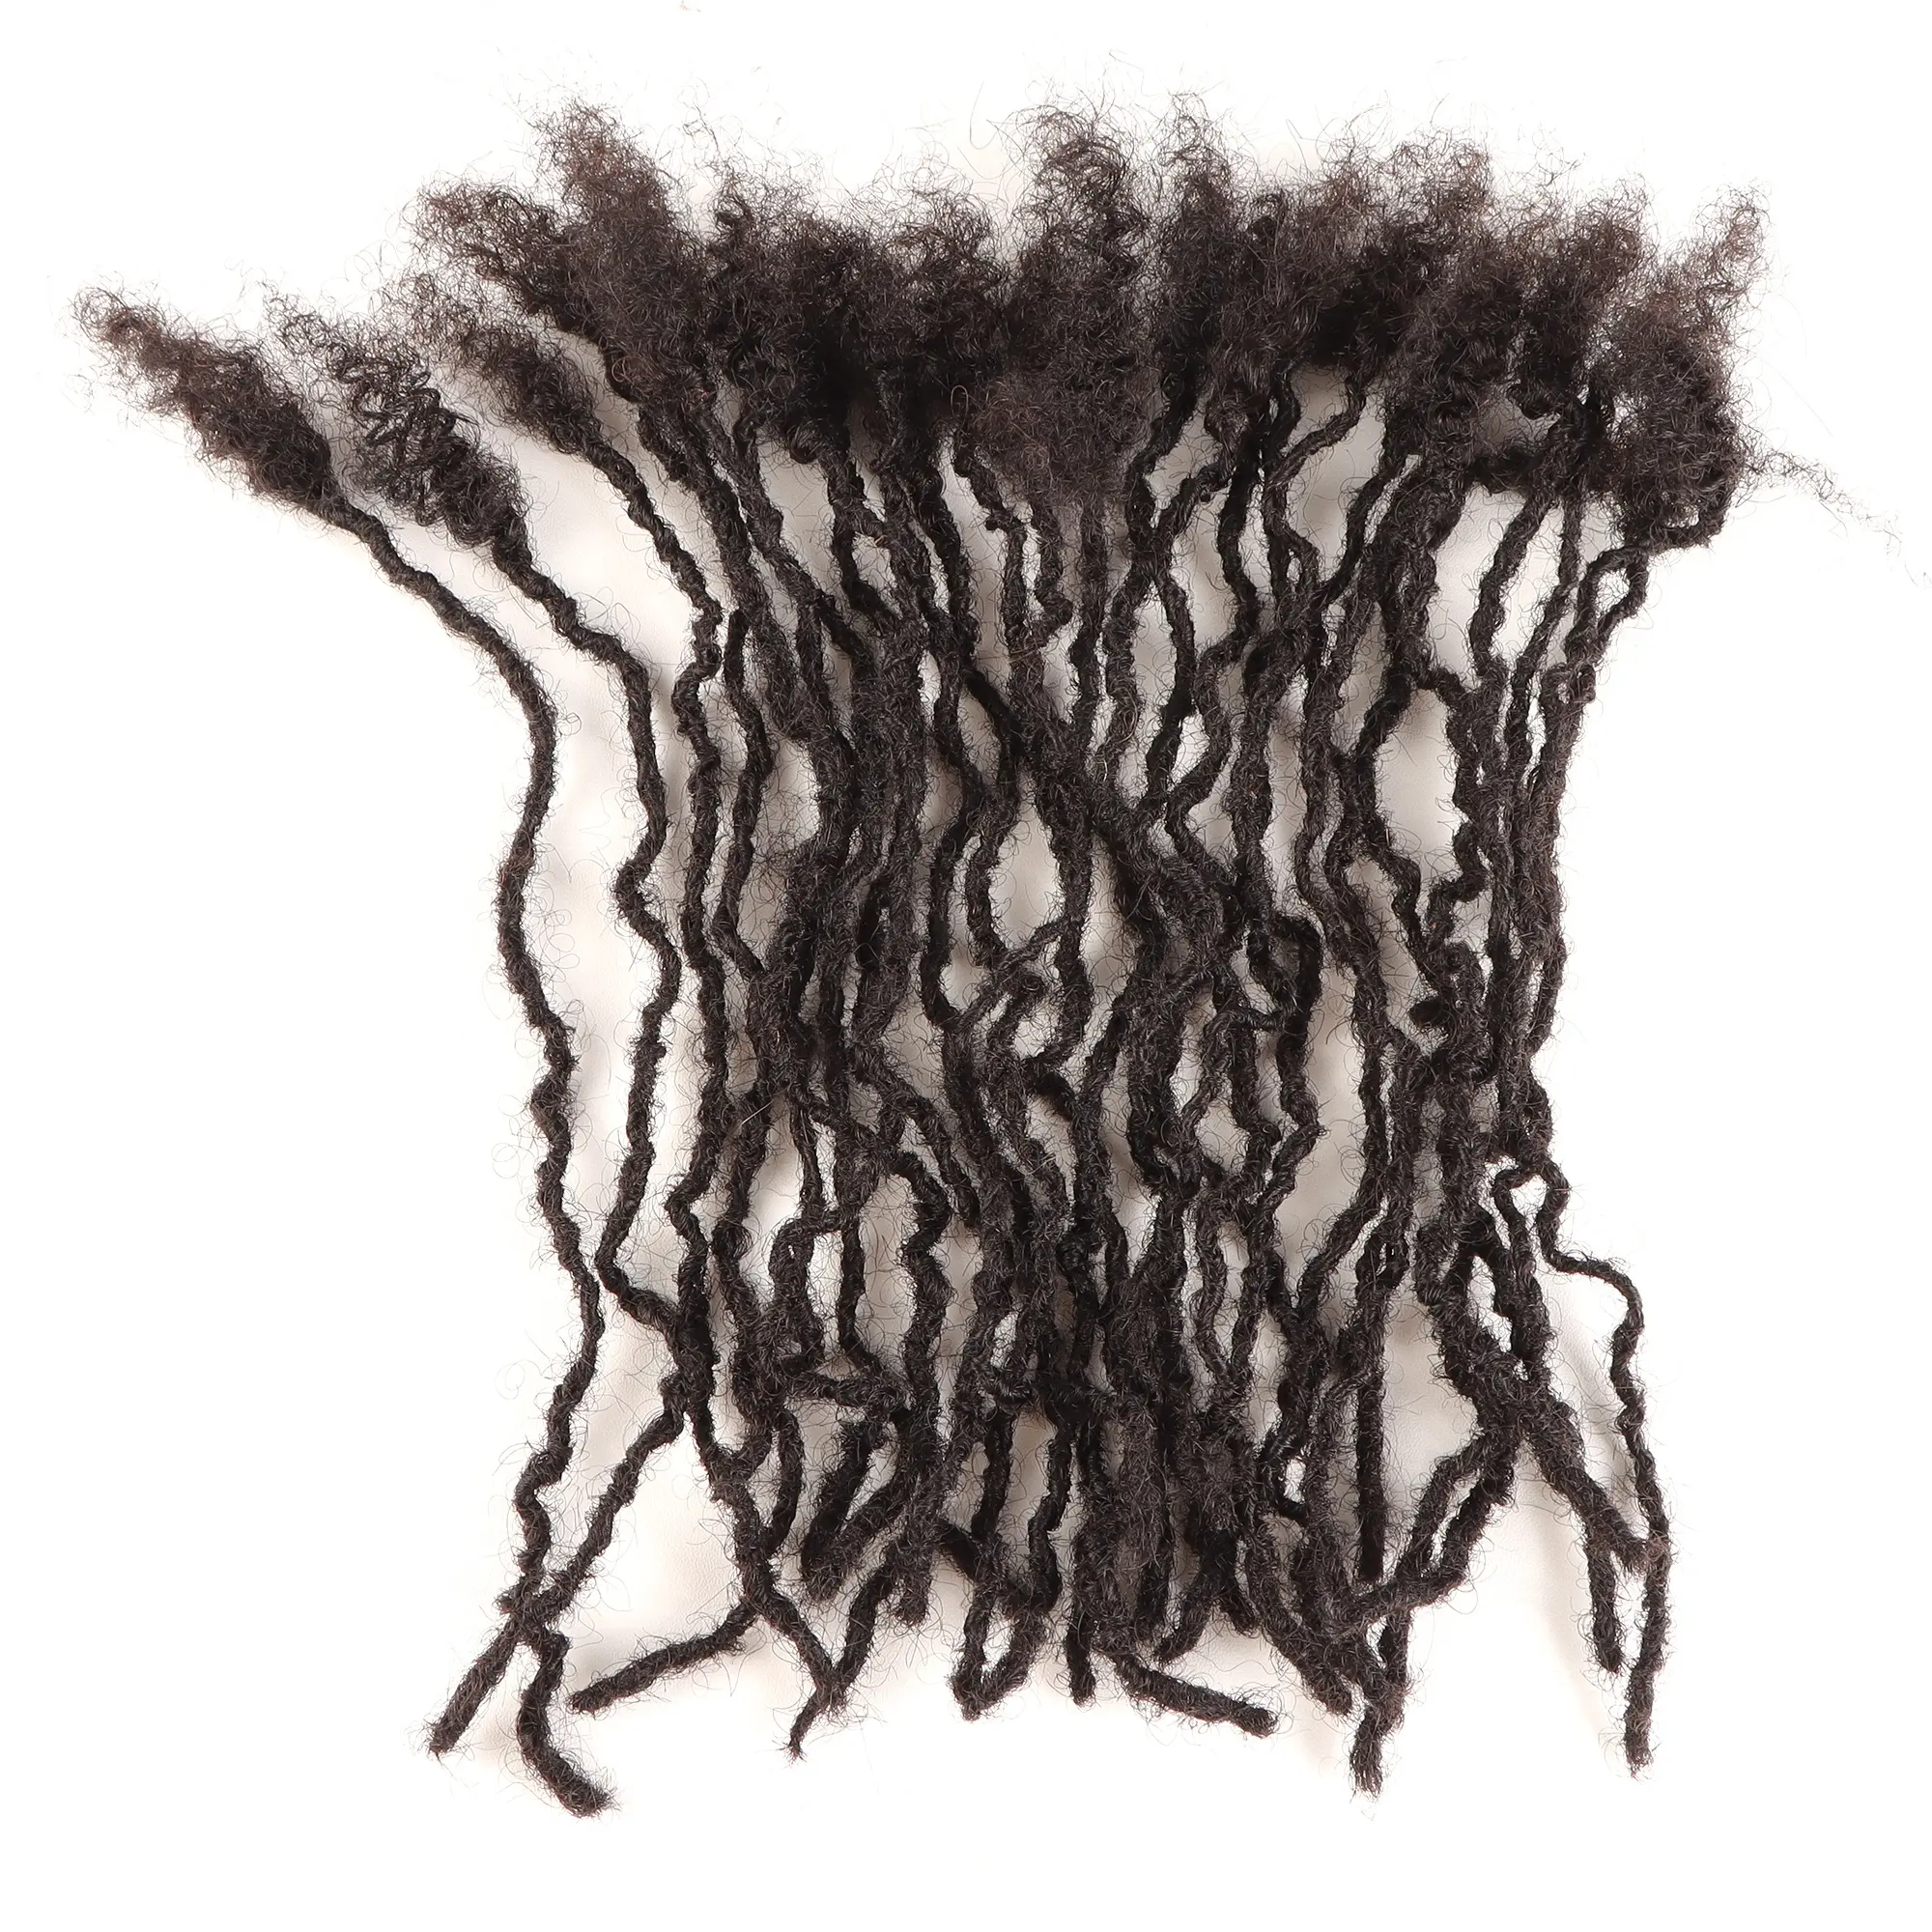 Orientdreads تتشابك الشعر البشري ، ملحقات Microsisterlocks-، من من